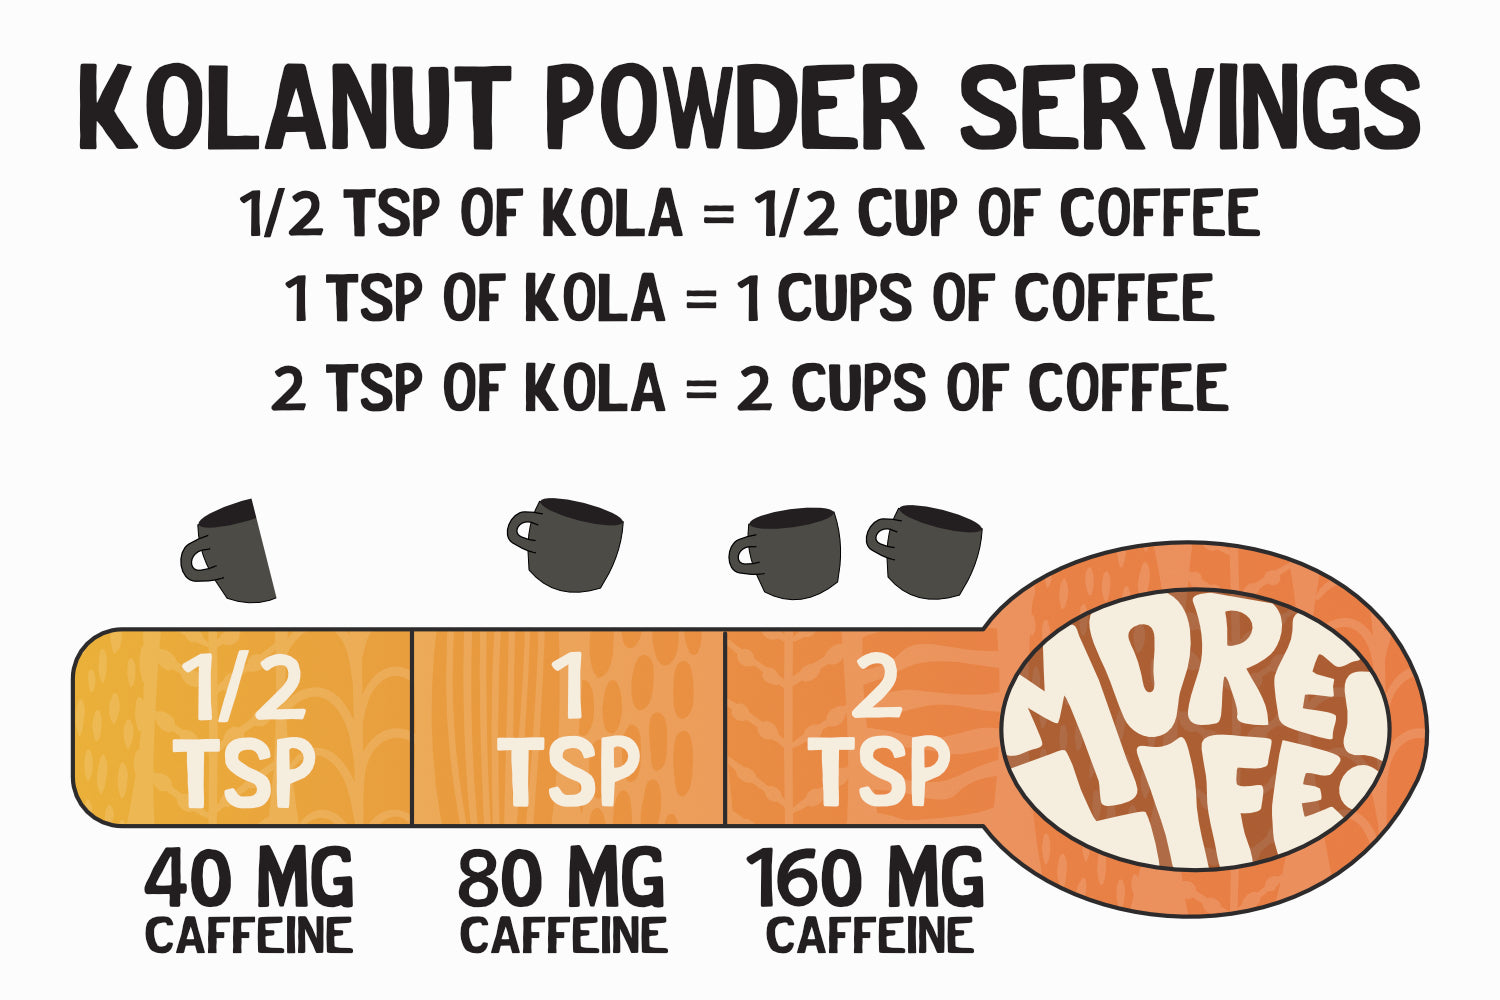 Kolanut Energy Powder servings and comparison to coffee - kola has thee times more caffeine per gram than coffee